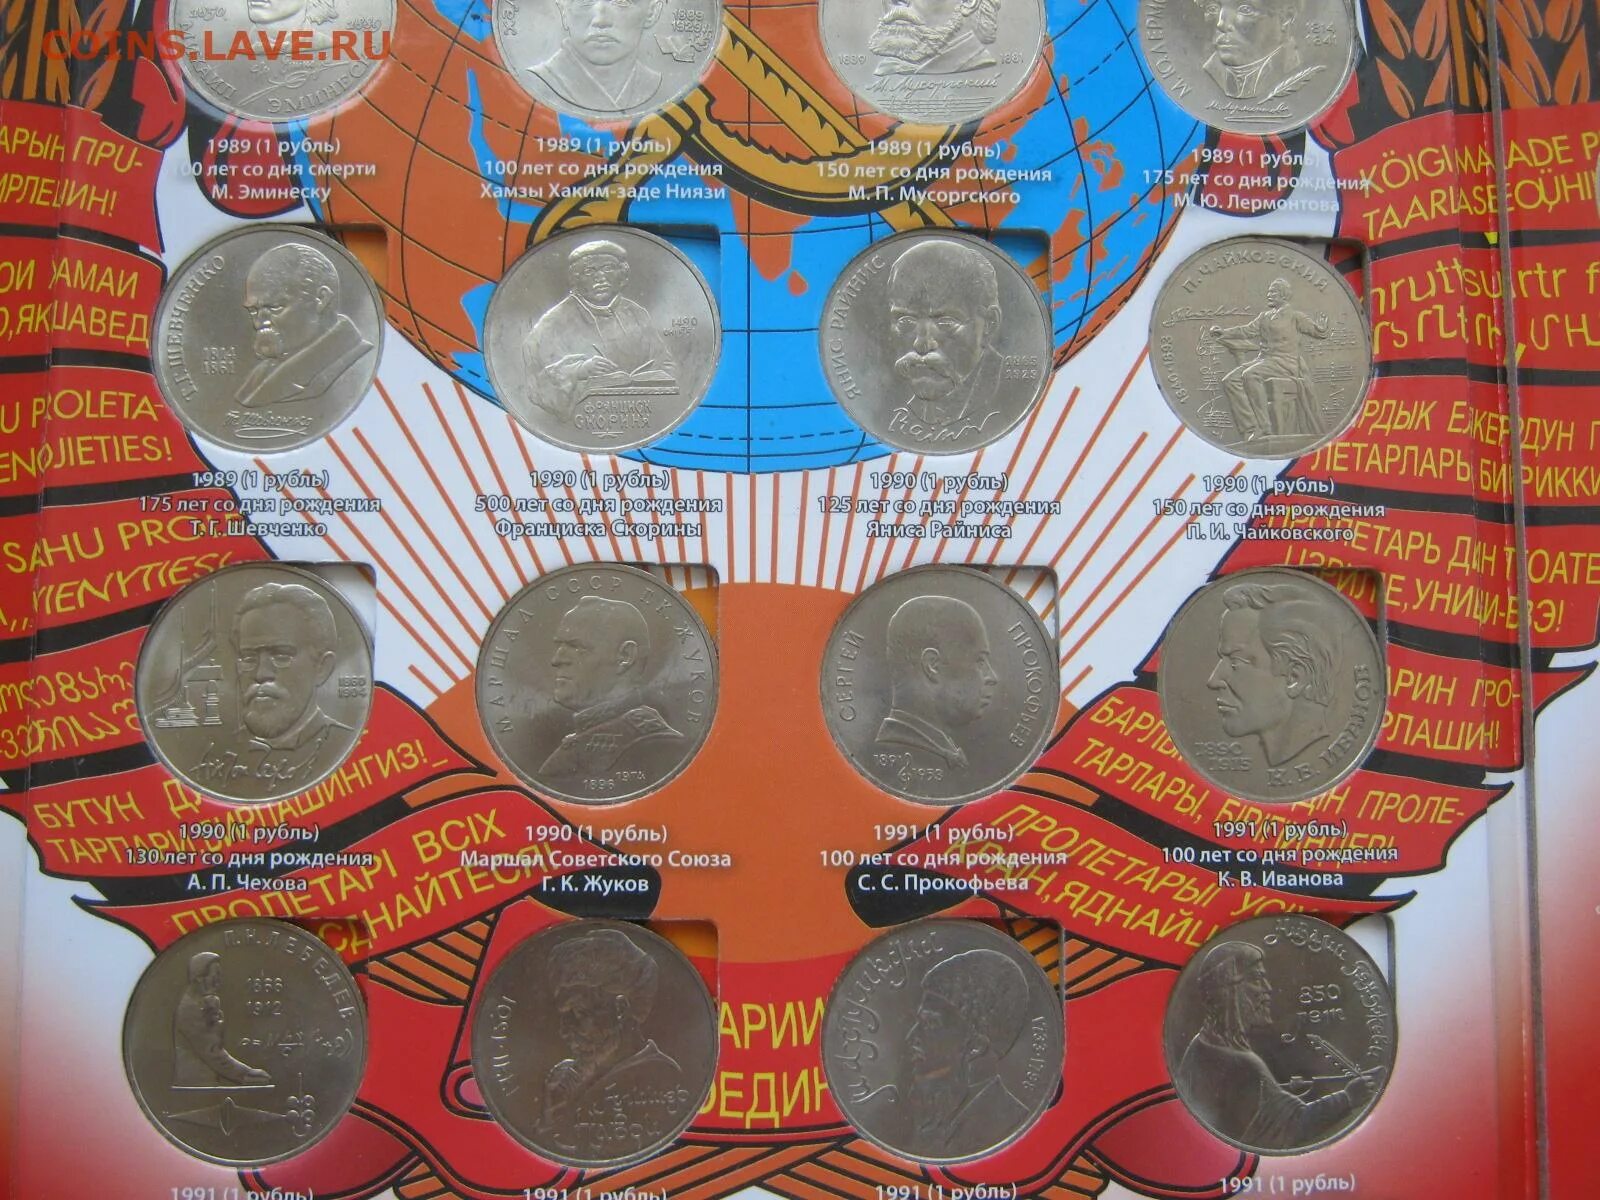 3 64 в рублях. Юбилейные монеты СССР 68 монет. Юбилейные монеты СССР набор 68 монет. Альбом советских юбилейных монет. Монеты СССР юбилейка.